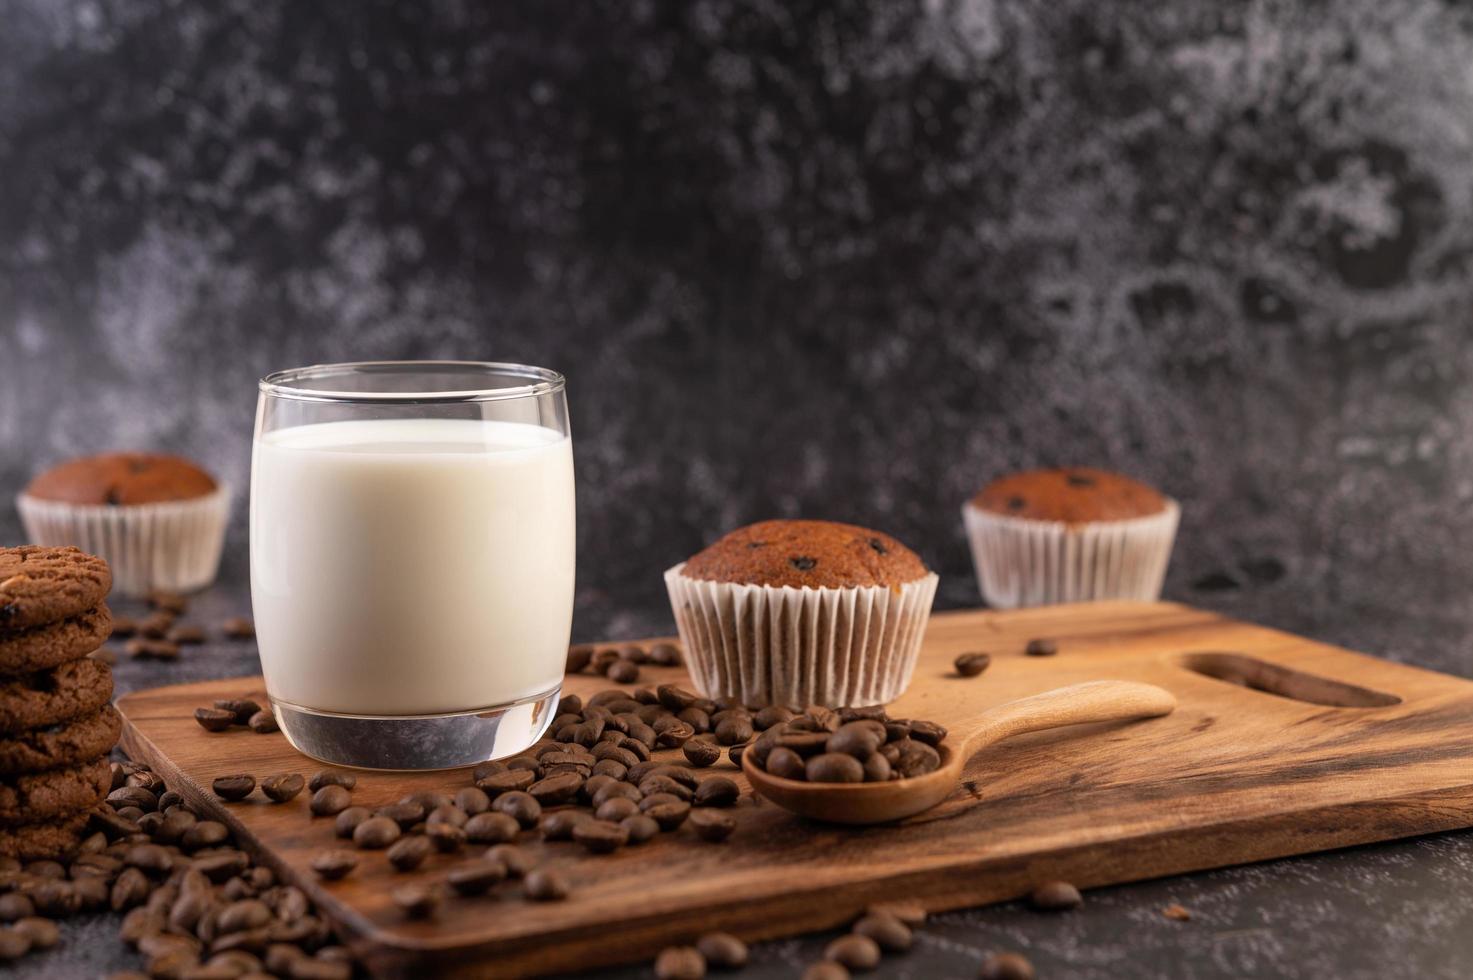 melk in een glas met koffiebonen en muffins foto